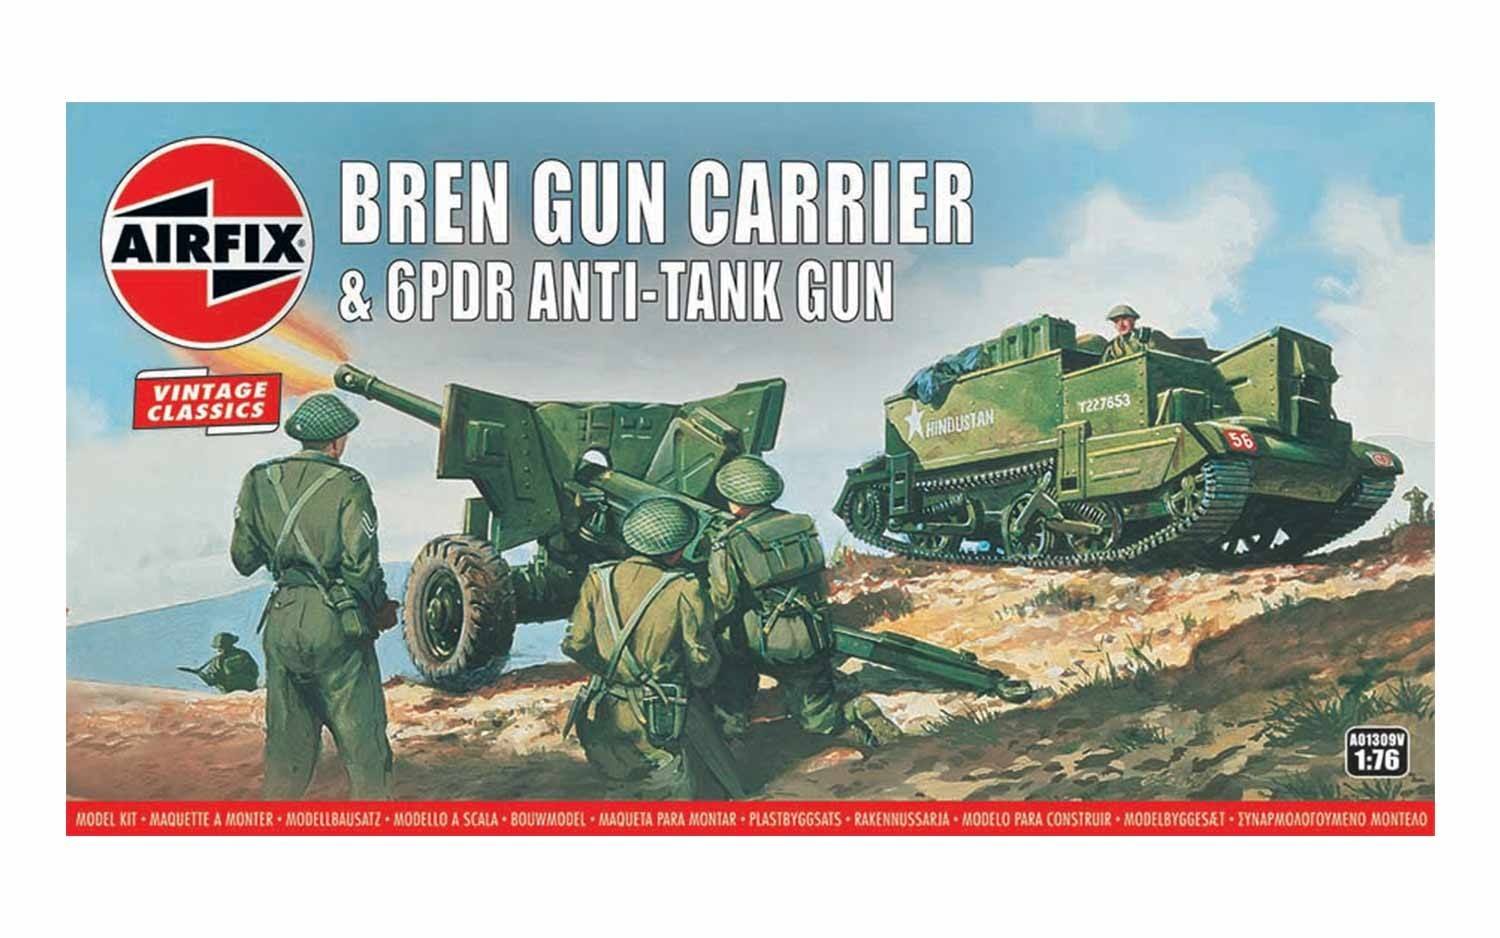 Vintage Classics - Bren Gun Carrier & 6pdr Anti-Tank Gun 